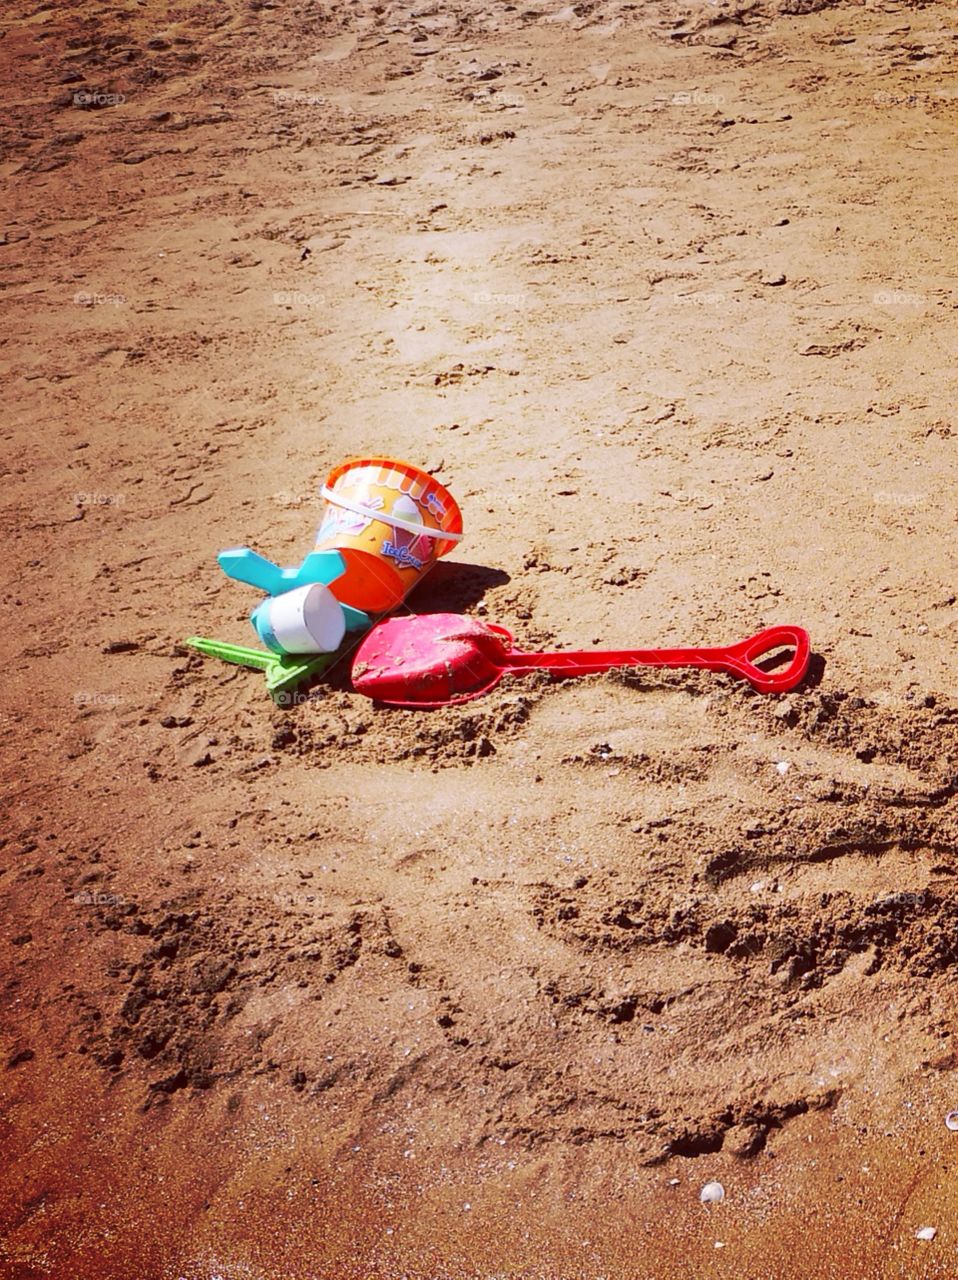 Toys on the beach